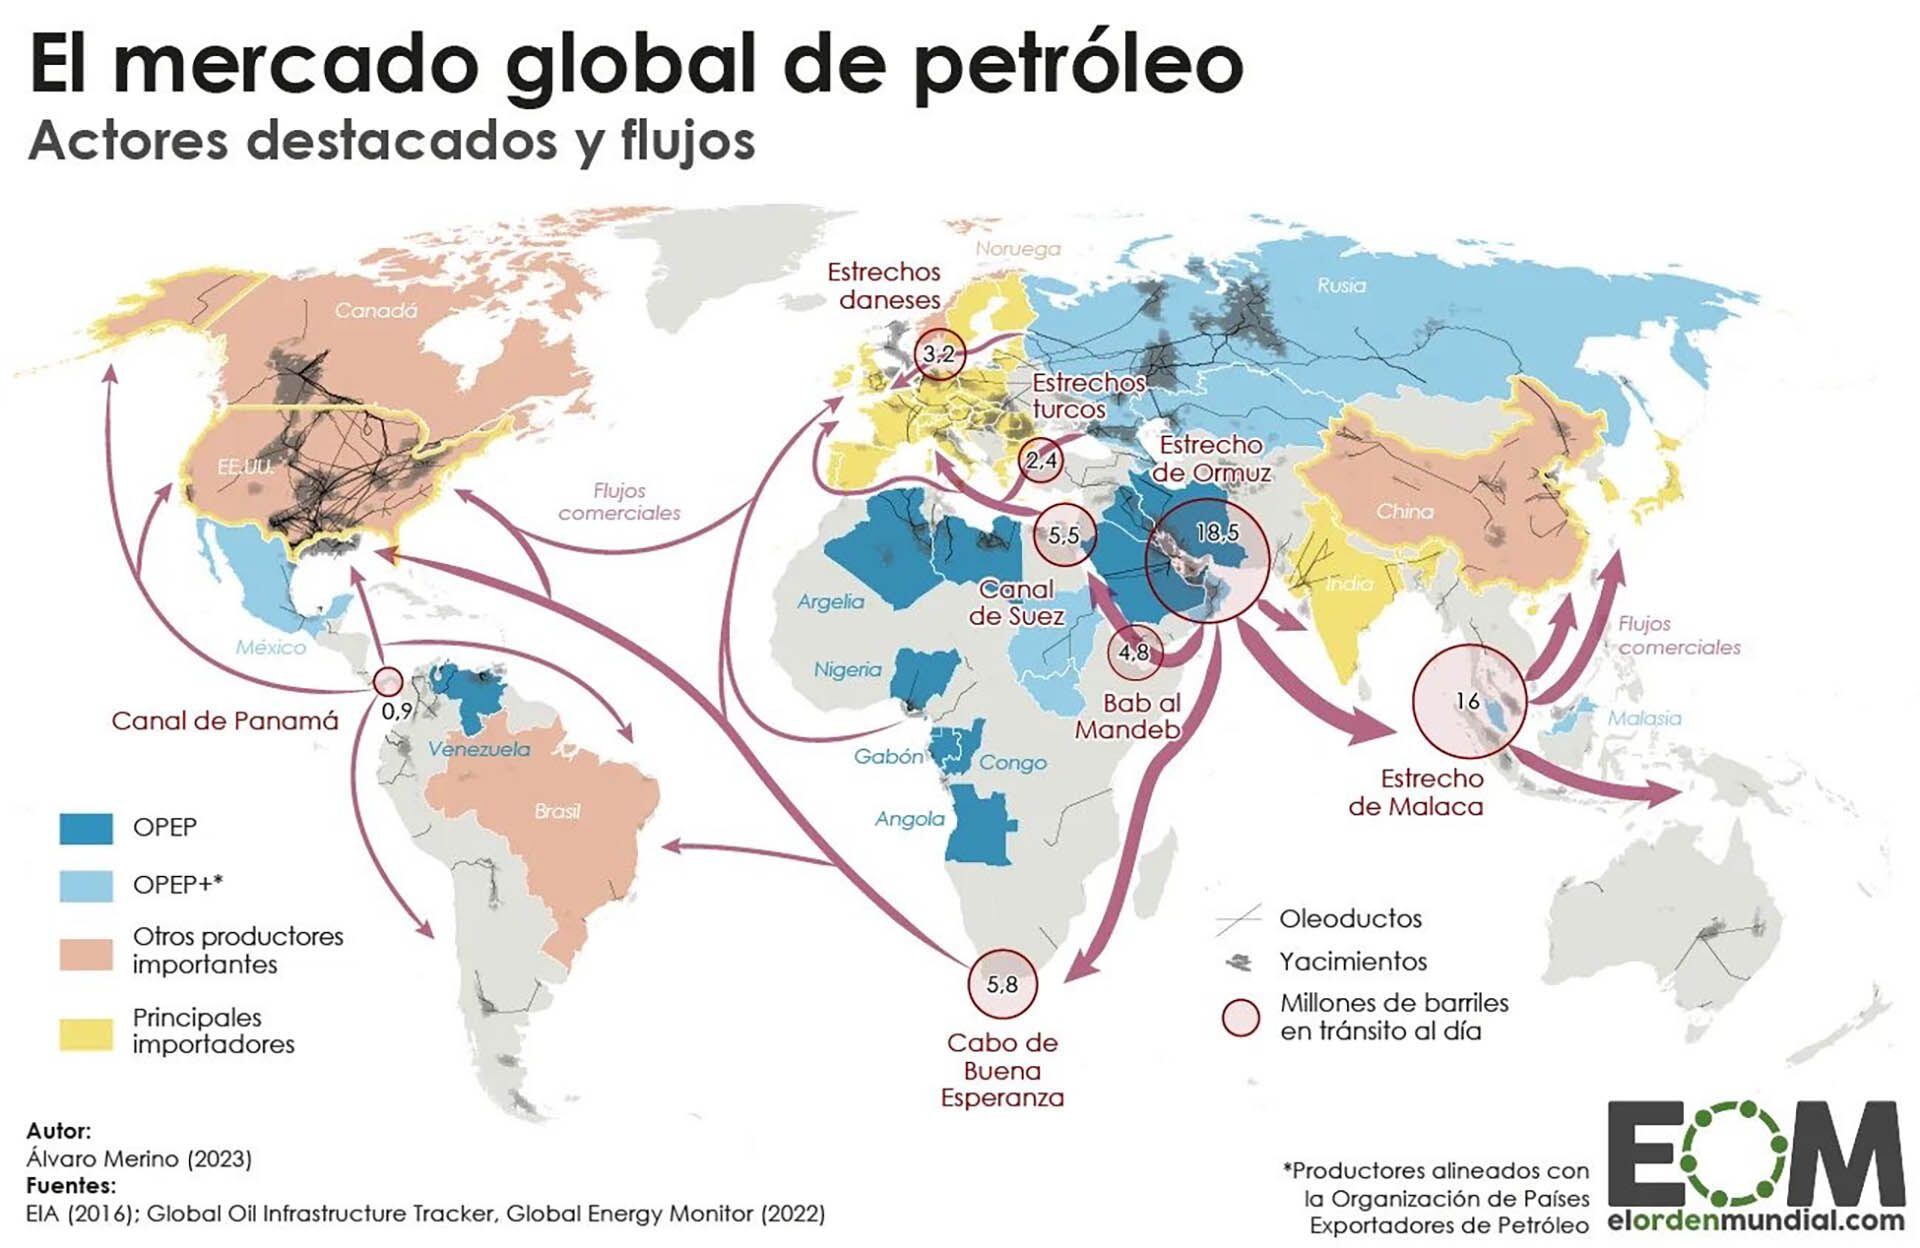 Actores y flujos destacados del mercado global de petróleo (Fuente: El Orden Mundial)